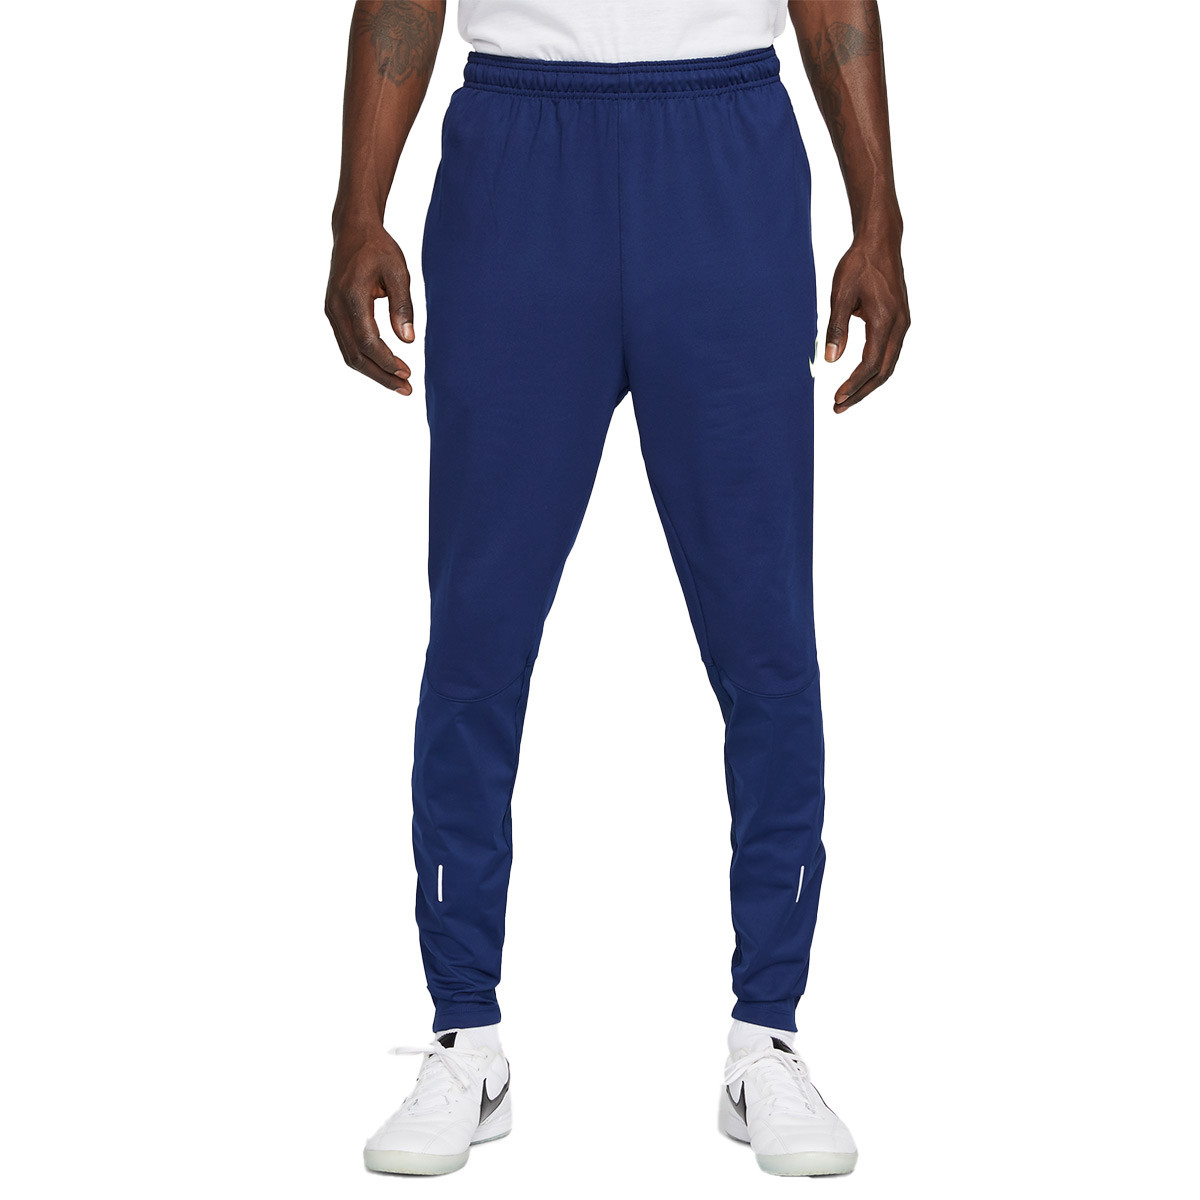 Pantalón largo Nike Strike Blue void - Fútbol